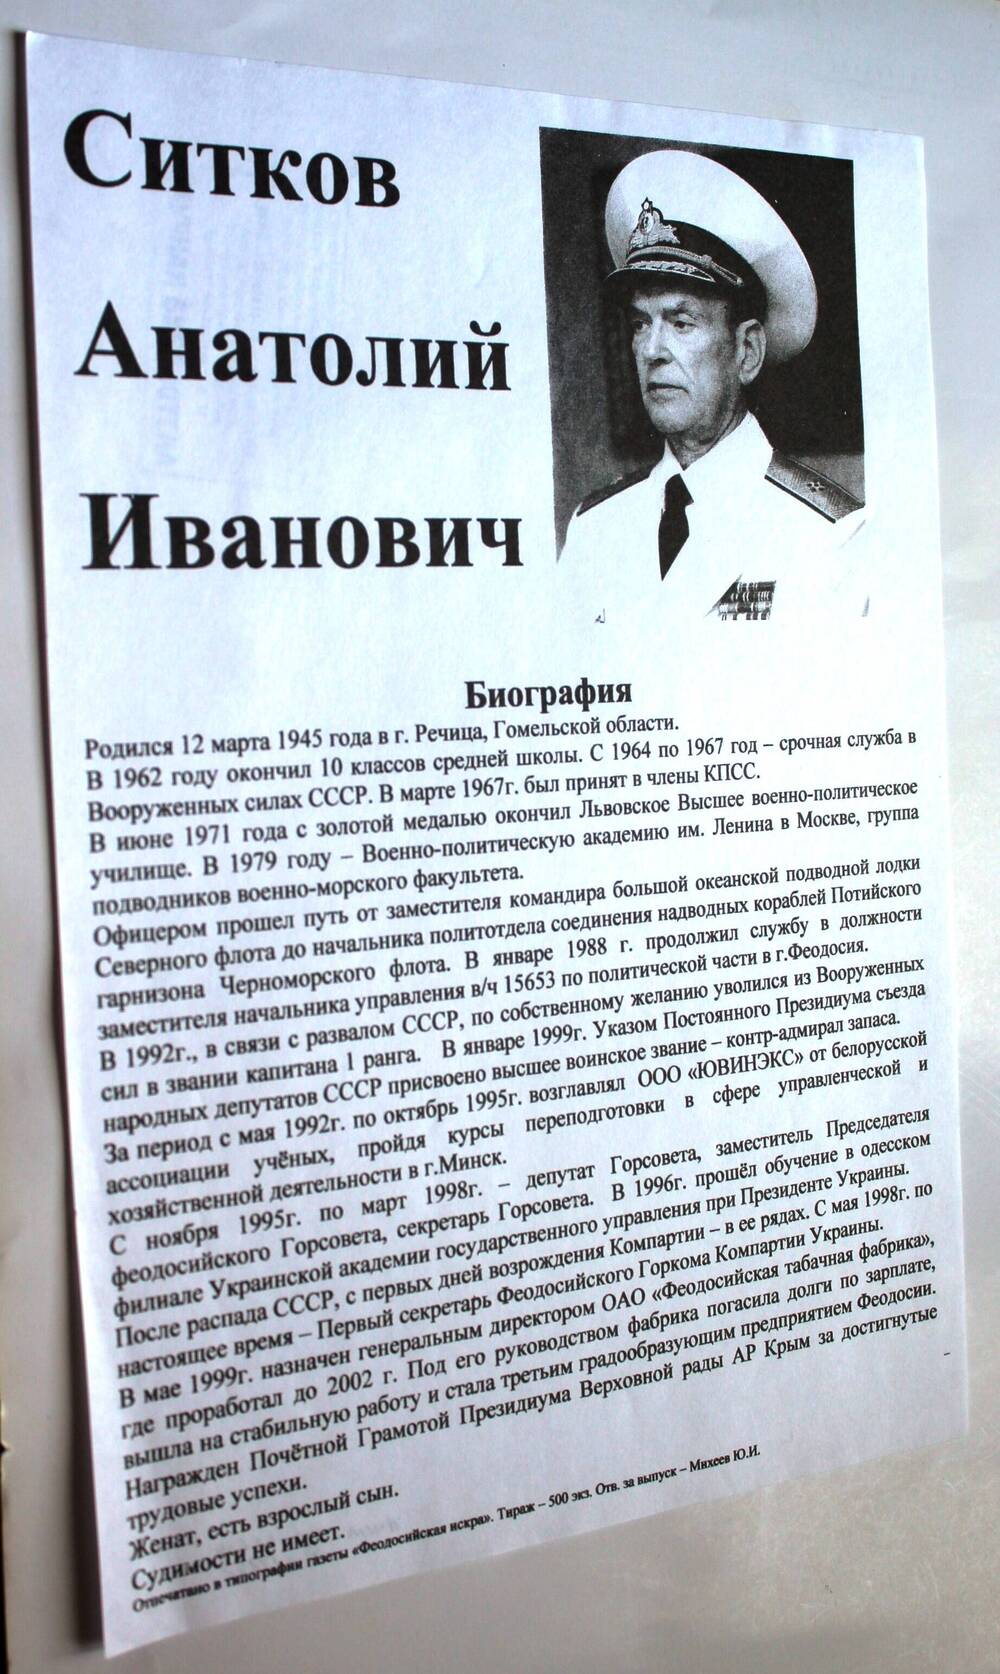 Листовка. Ситков Анатолий Иванович. Биография. г. Феодосия, ноябрь 2008 г.